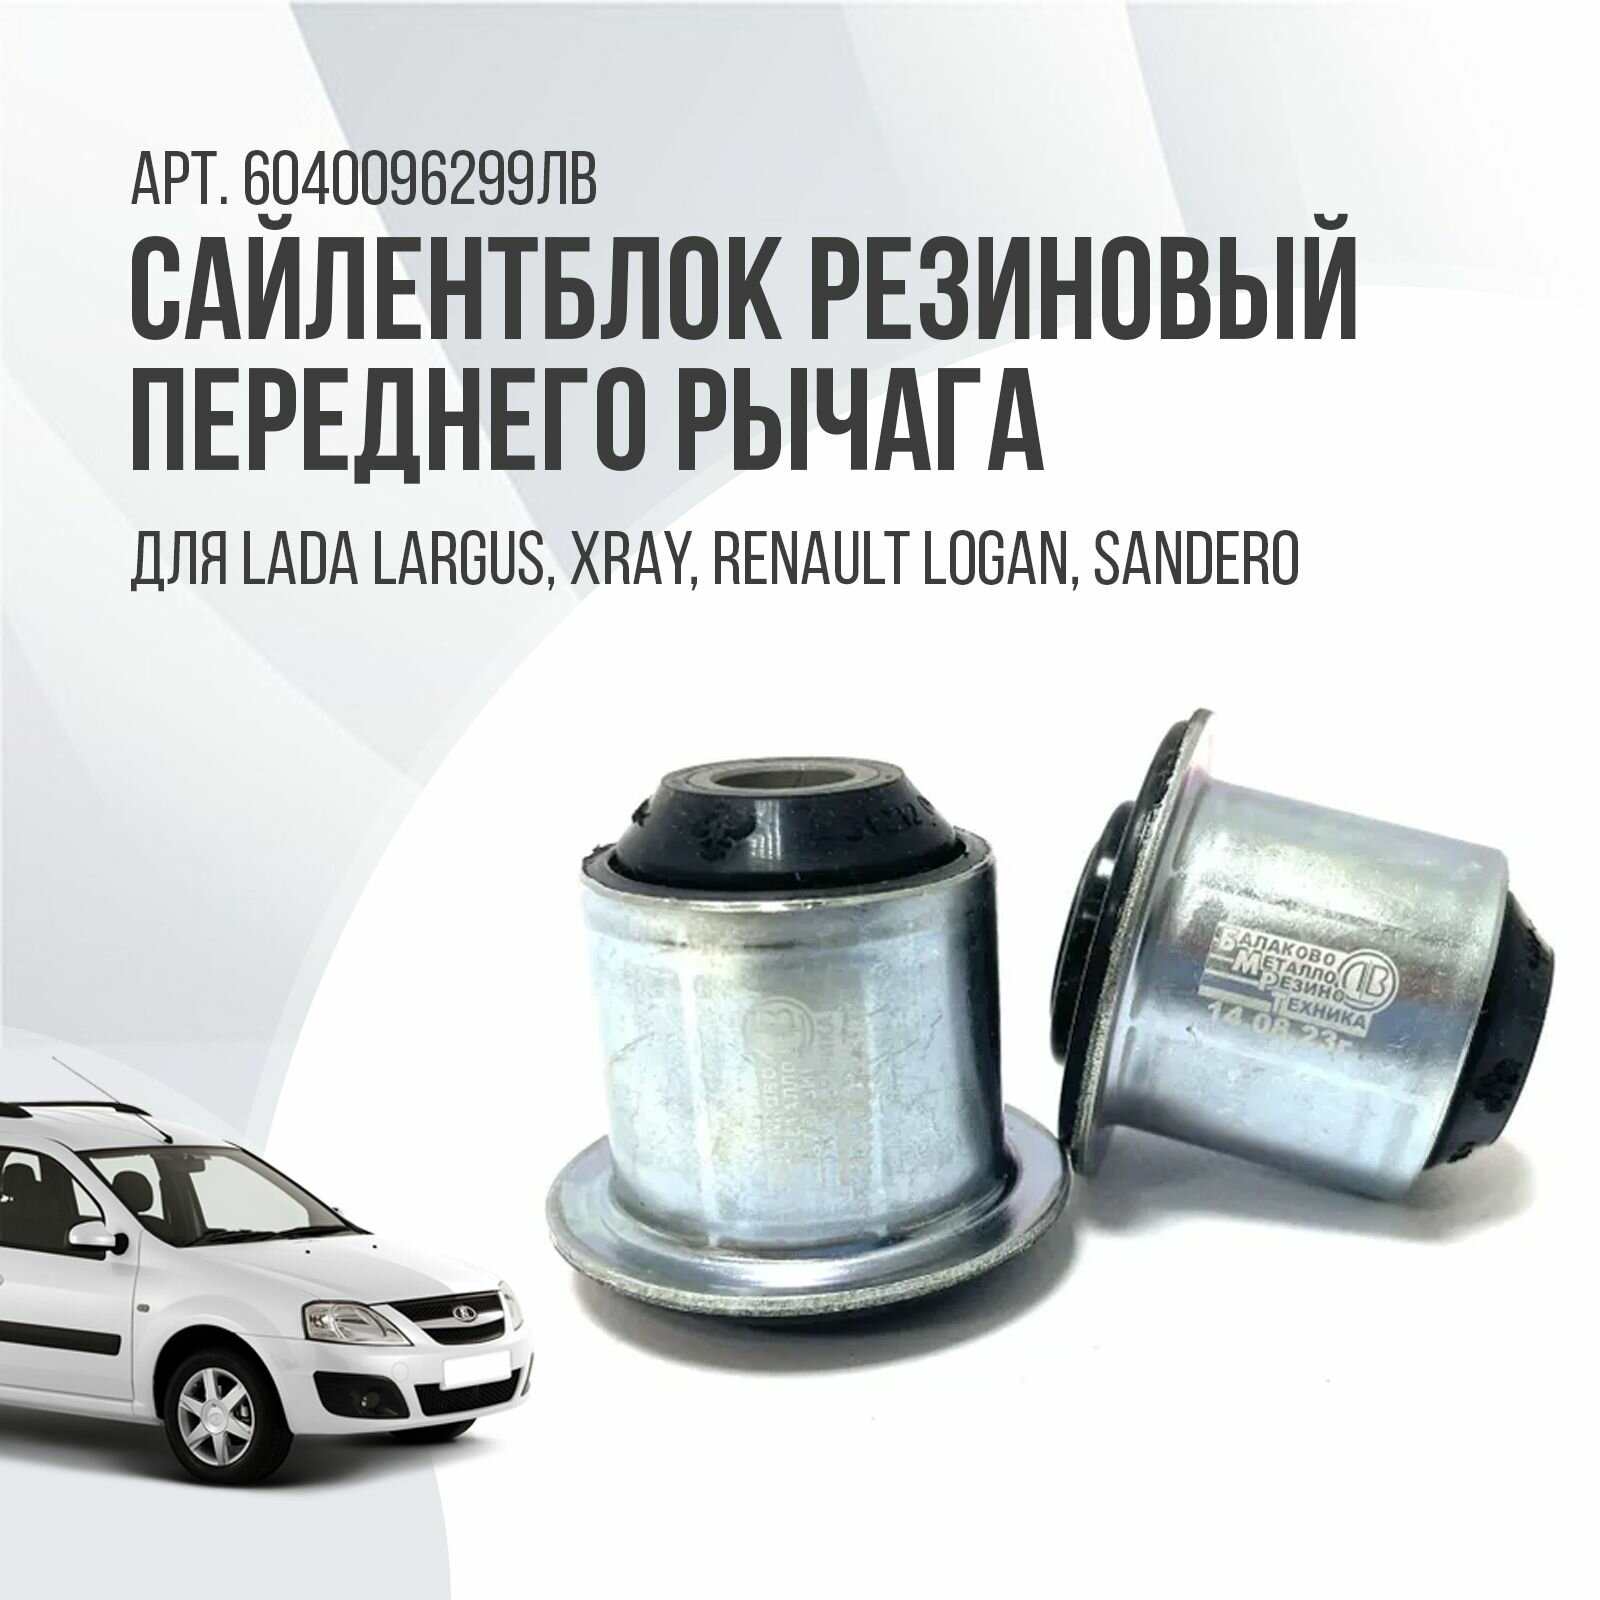 Сайлентблок резиновый переднего рычага Lada Largus, Xray. Renault Logan, Sandero. Бмрт